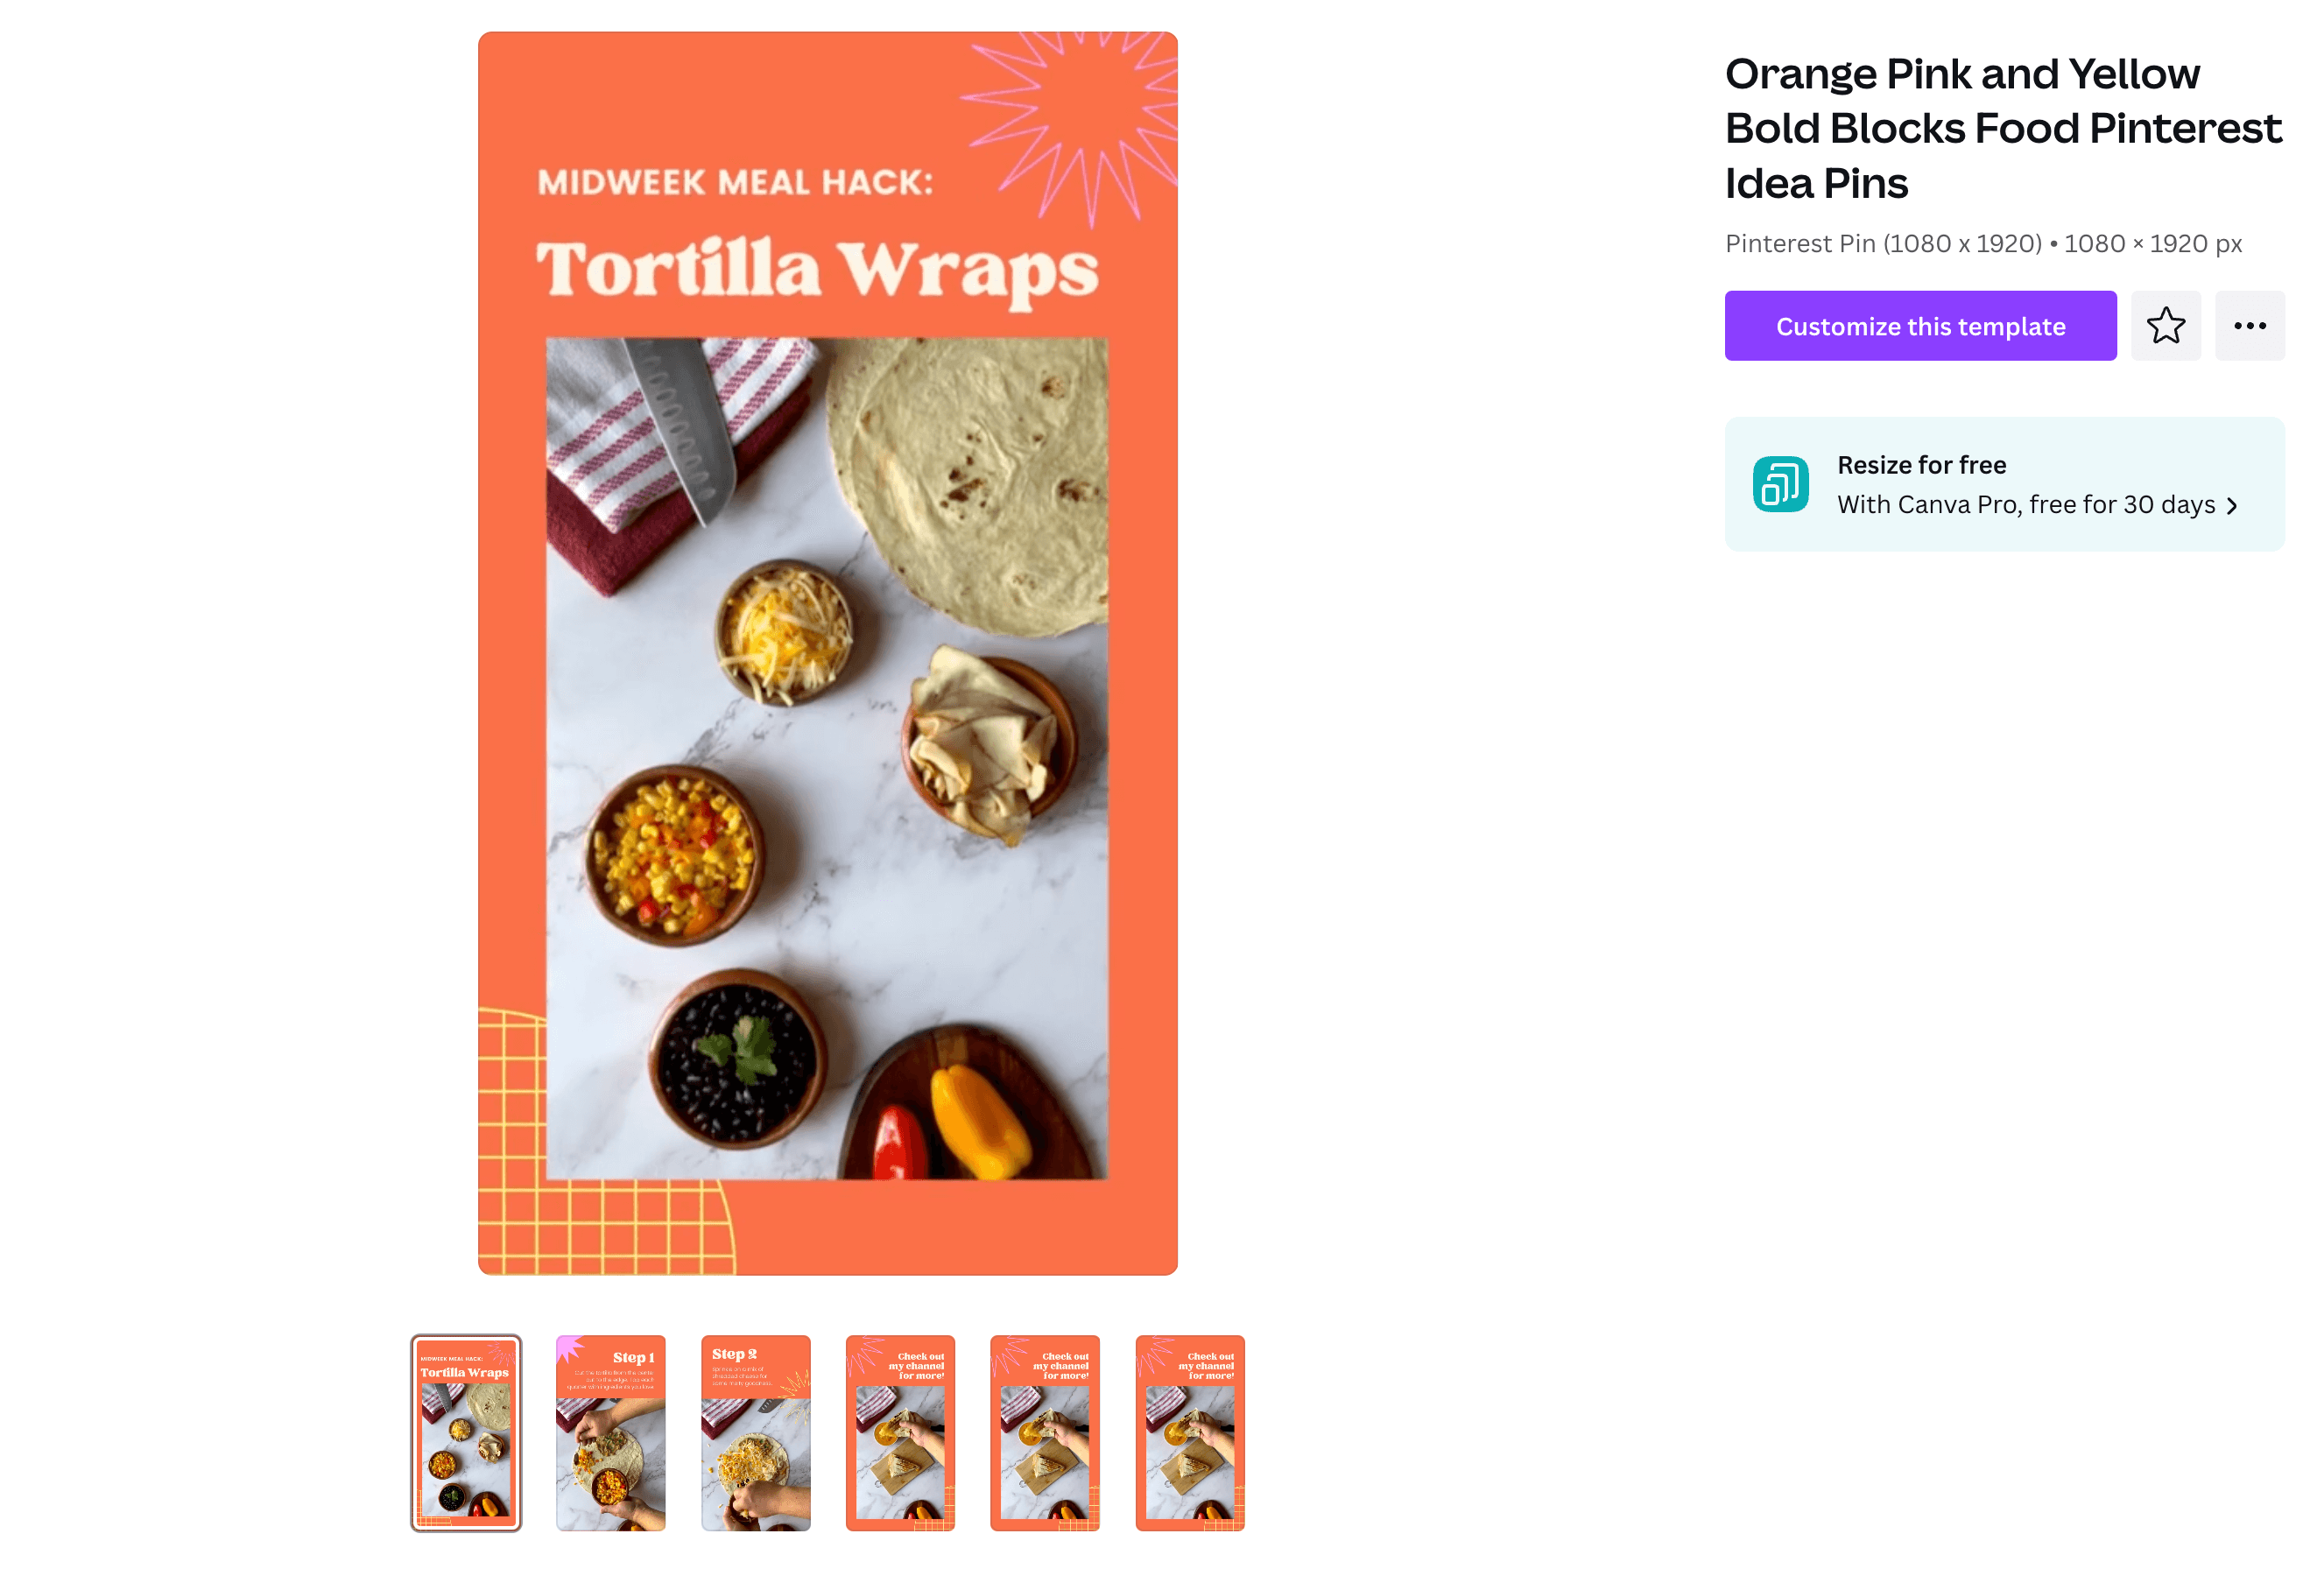 An idea pin template for a tortilla wrap recipe